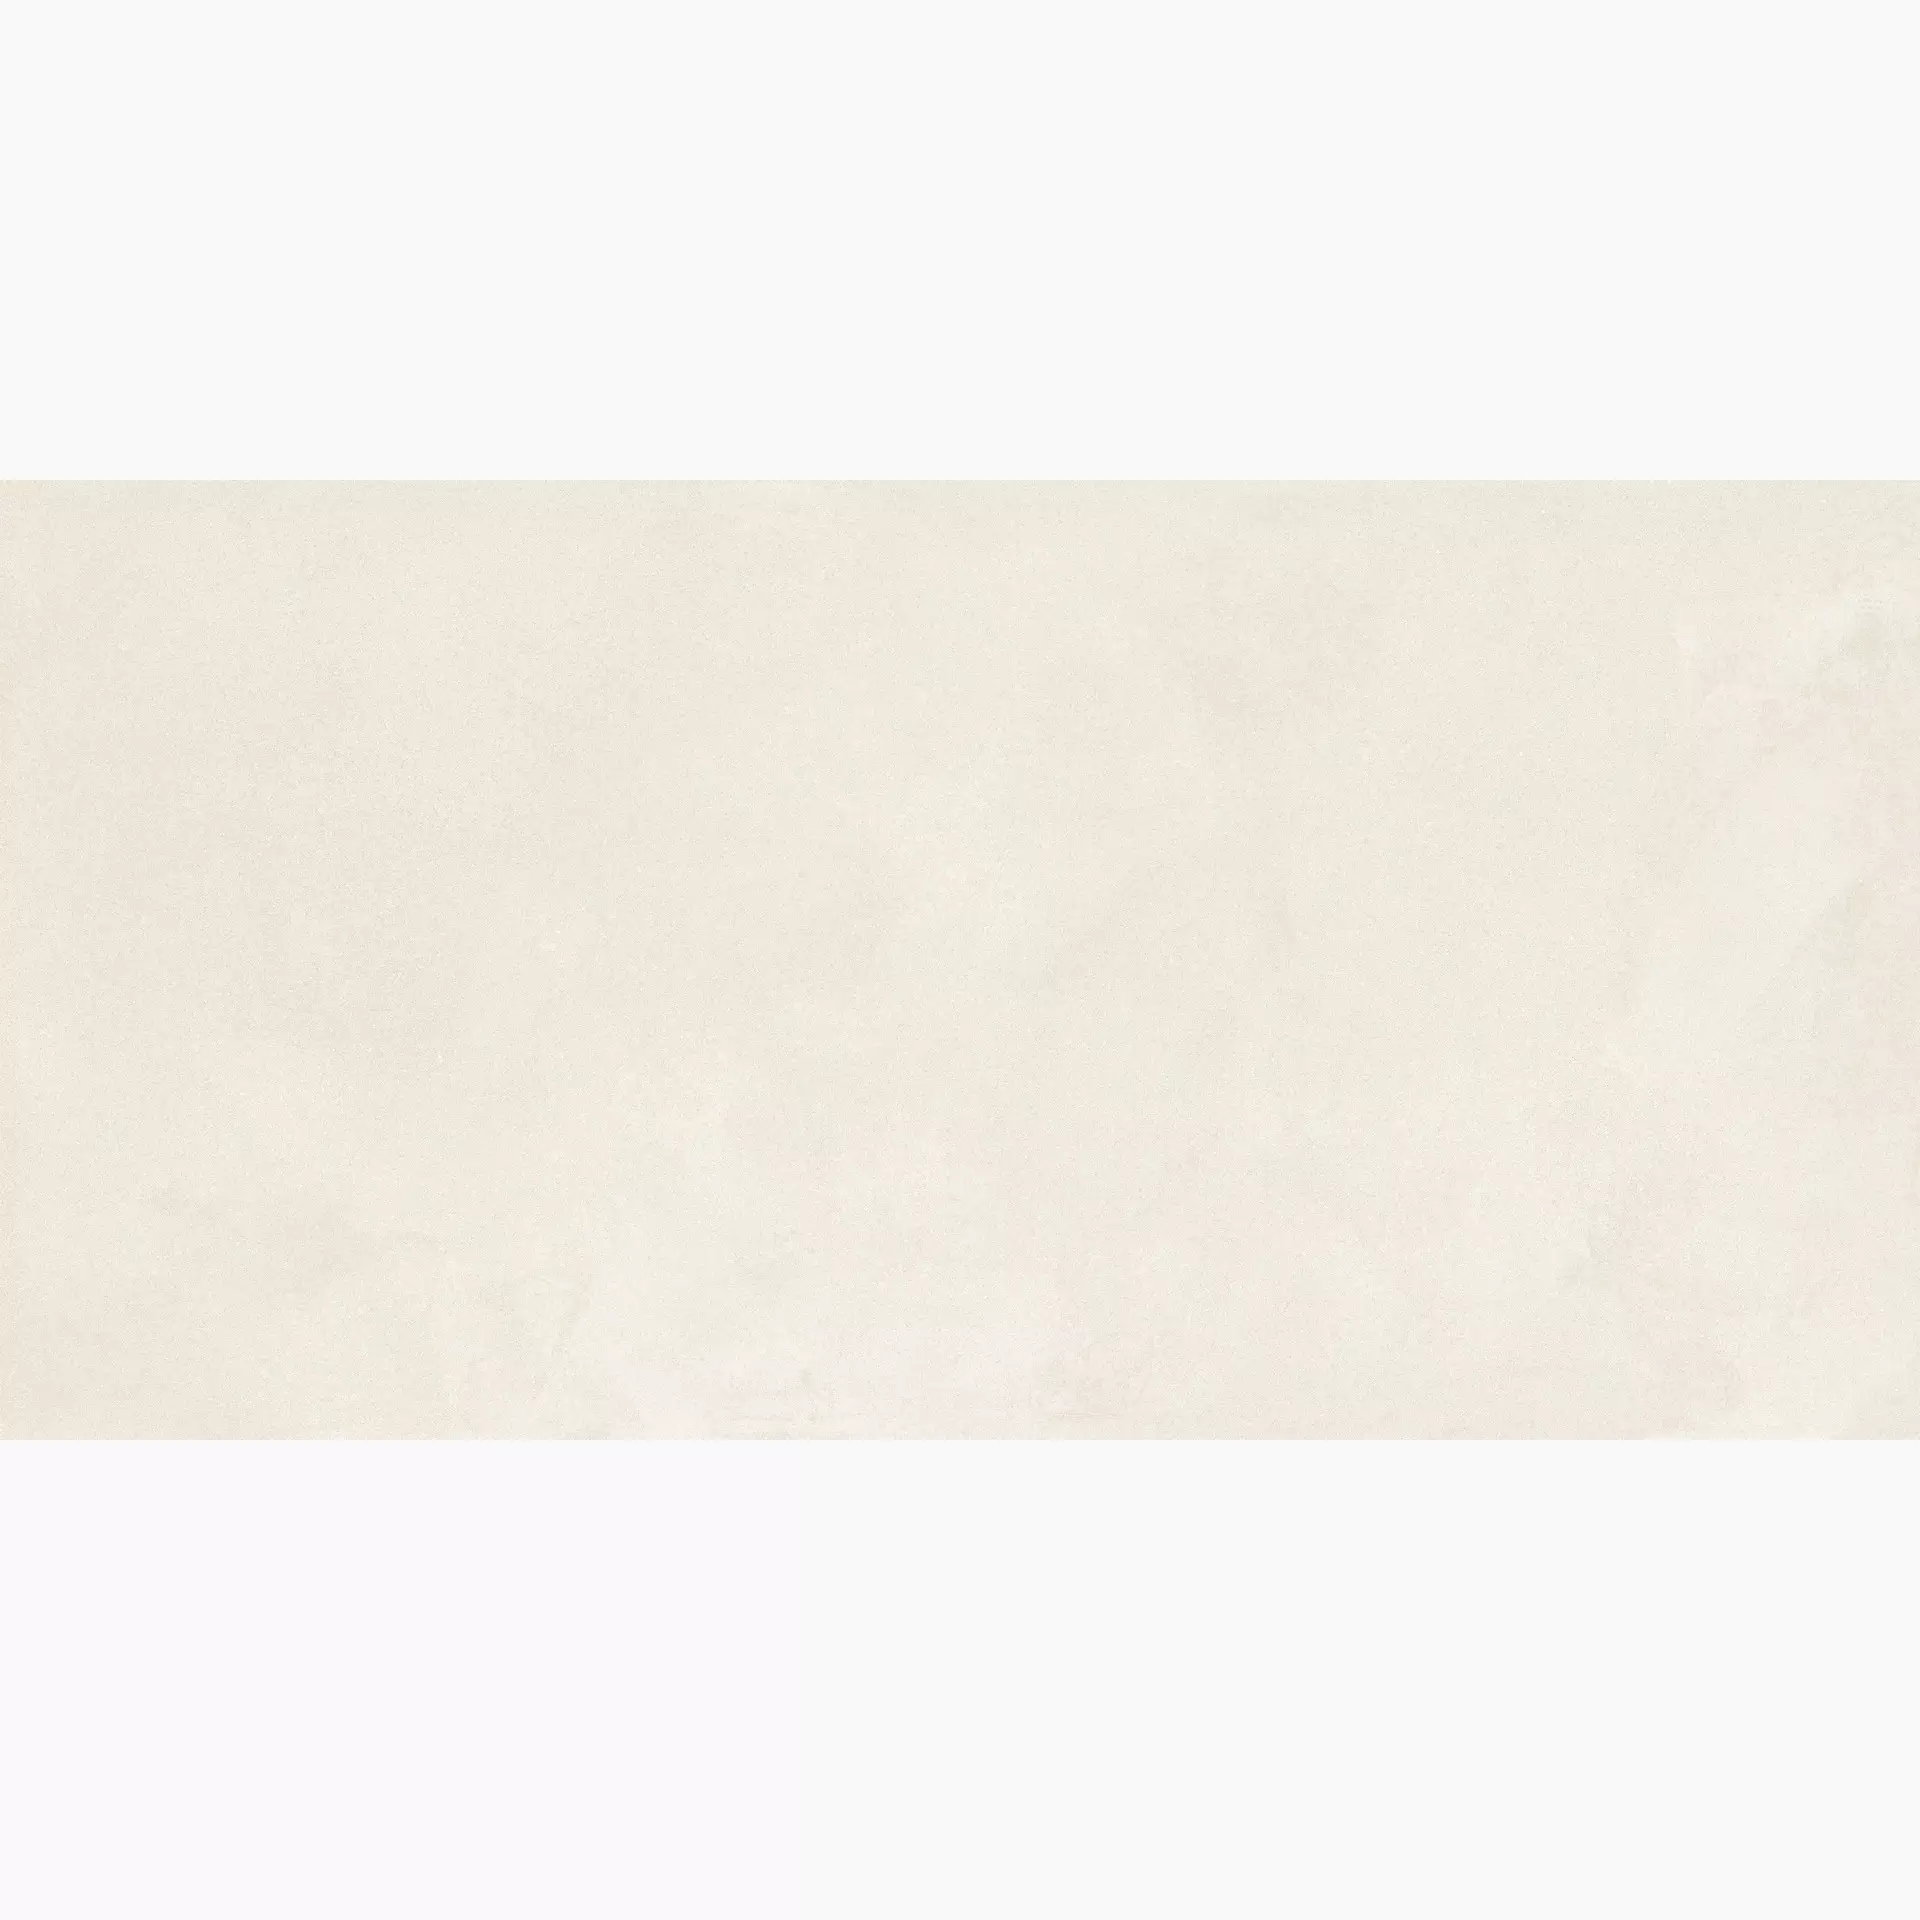 Ragno Stratford White Naturale – Matt R8UY naturale – matt 75x150cm rectified 9,5mm